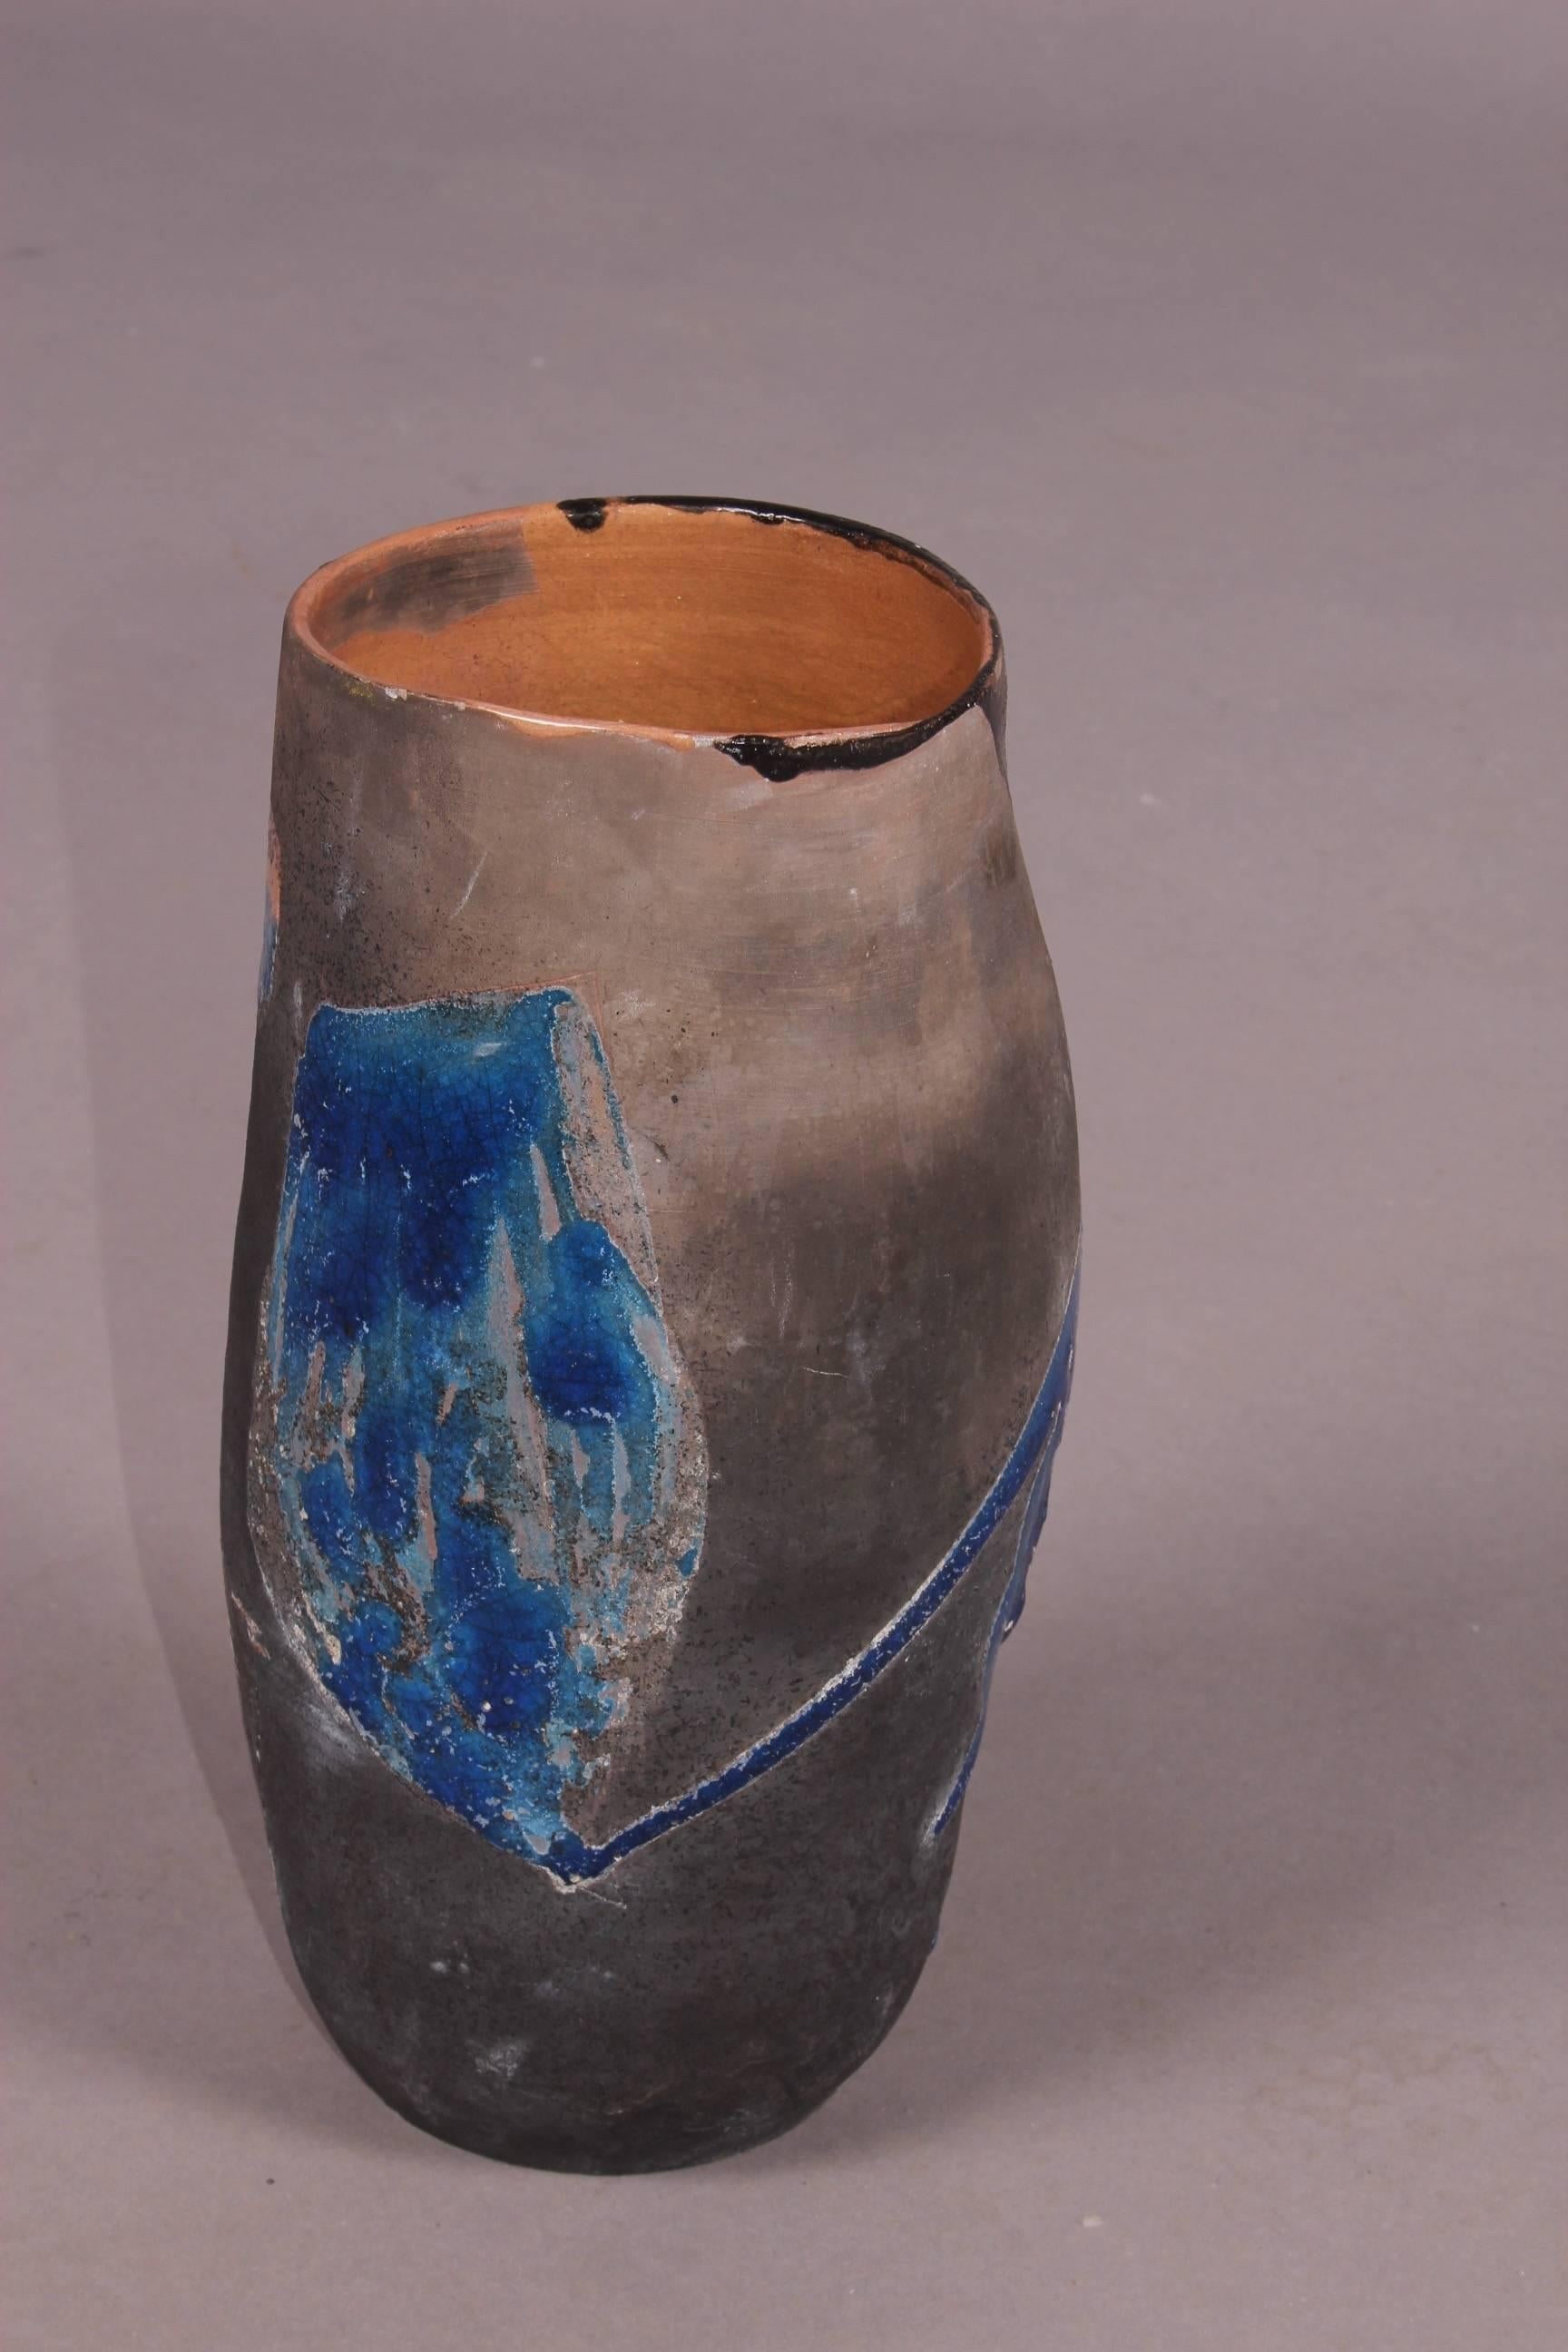 Painted ceramic vase.